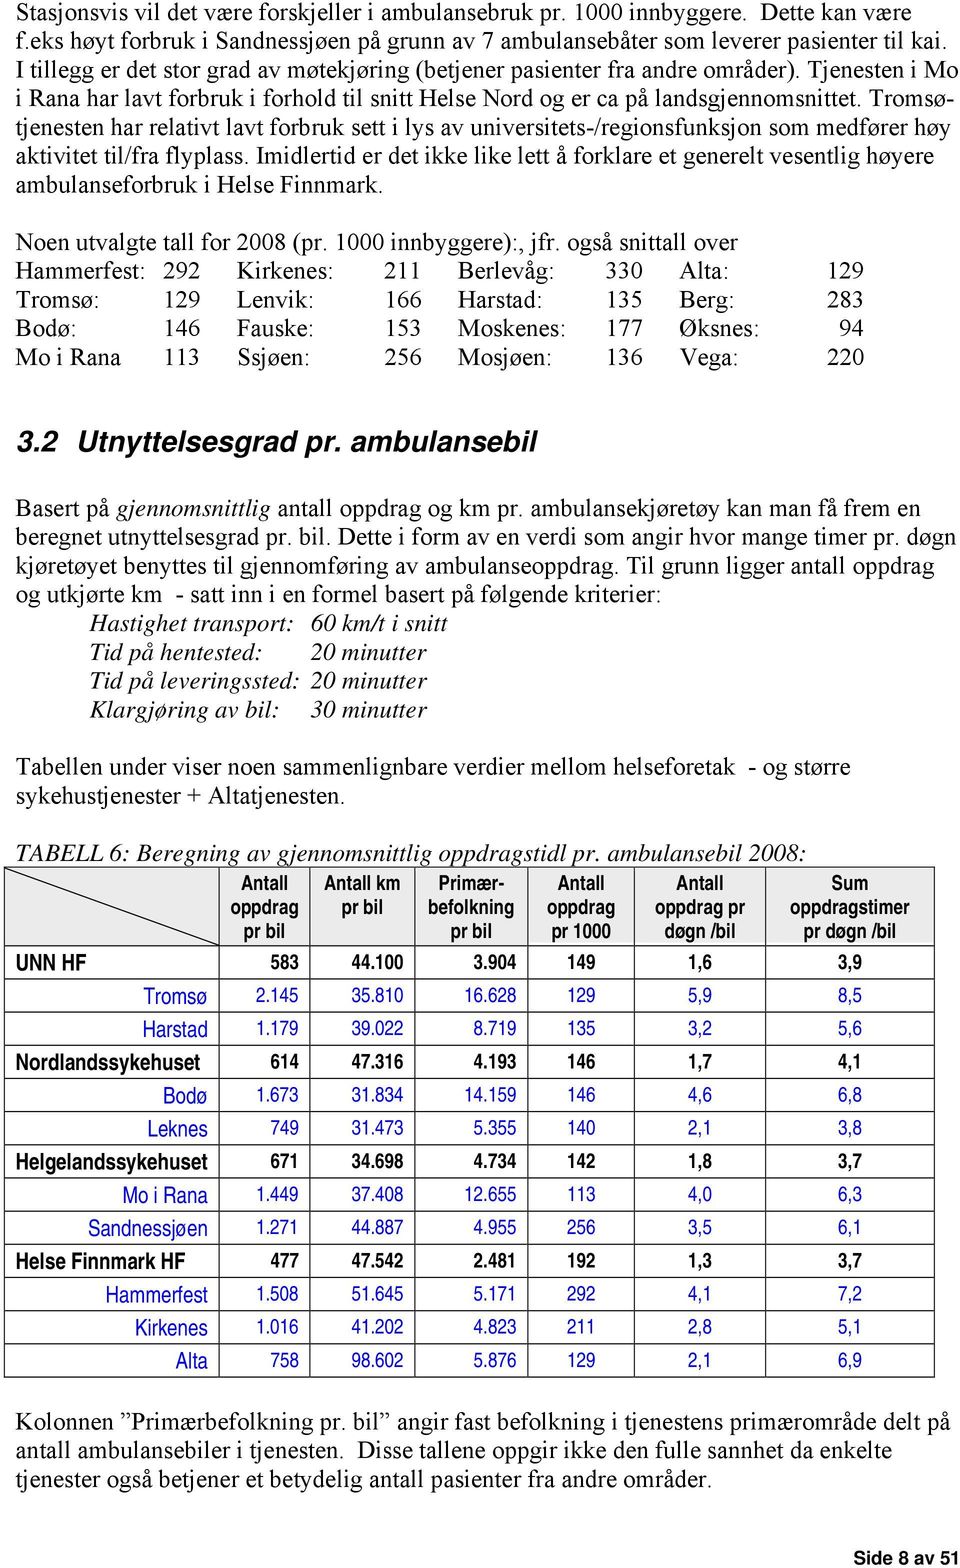 Tromsøtjenesten har relativt lavt forbruk sett i lys av universitets-/regionsfunksjon som medfører høy aktivitet til/fra flyplass.